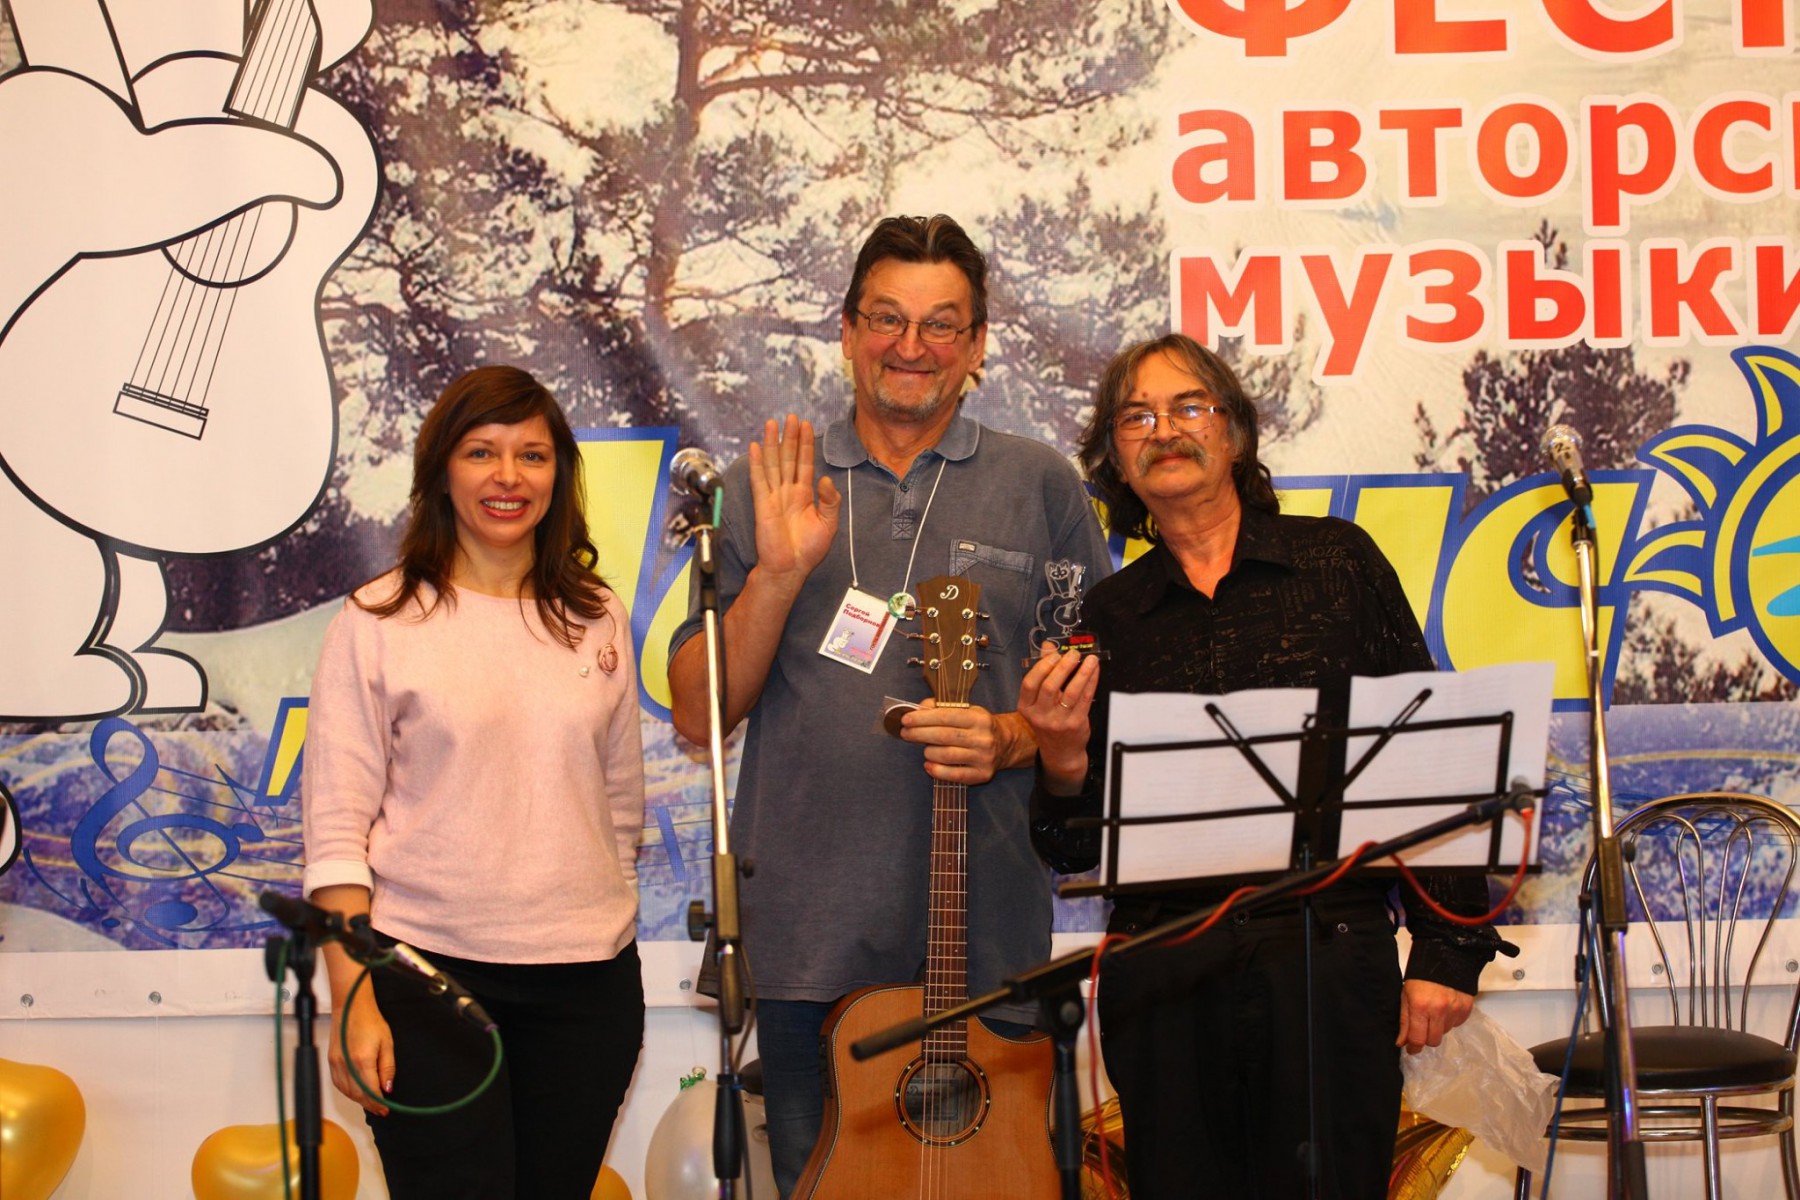 Сергей Бушков (первый справа на фотографии) организовал первый фестиваль "На Чусовой" в 2018 году. Теперь дело продолжают его друзья. Фото предоставлено организаторами фестиваля